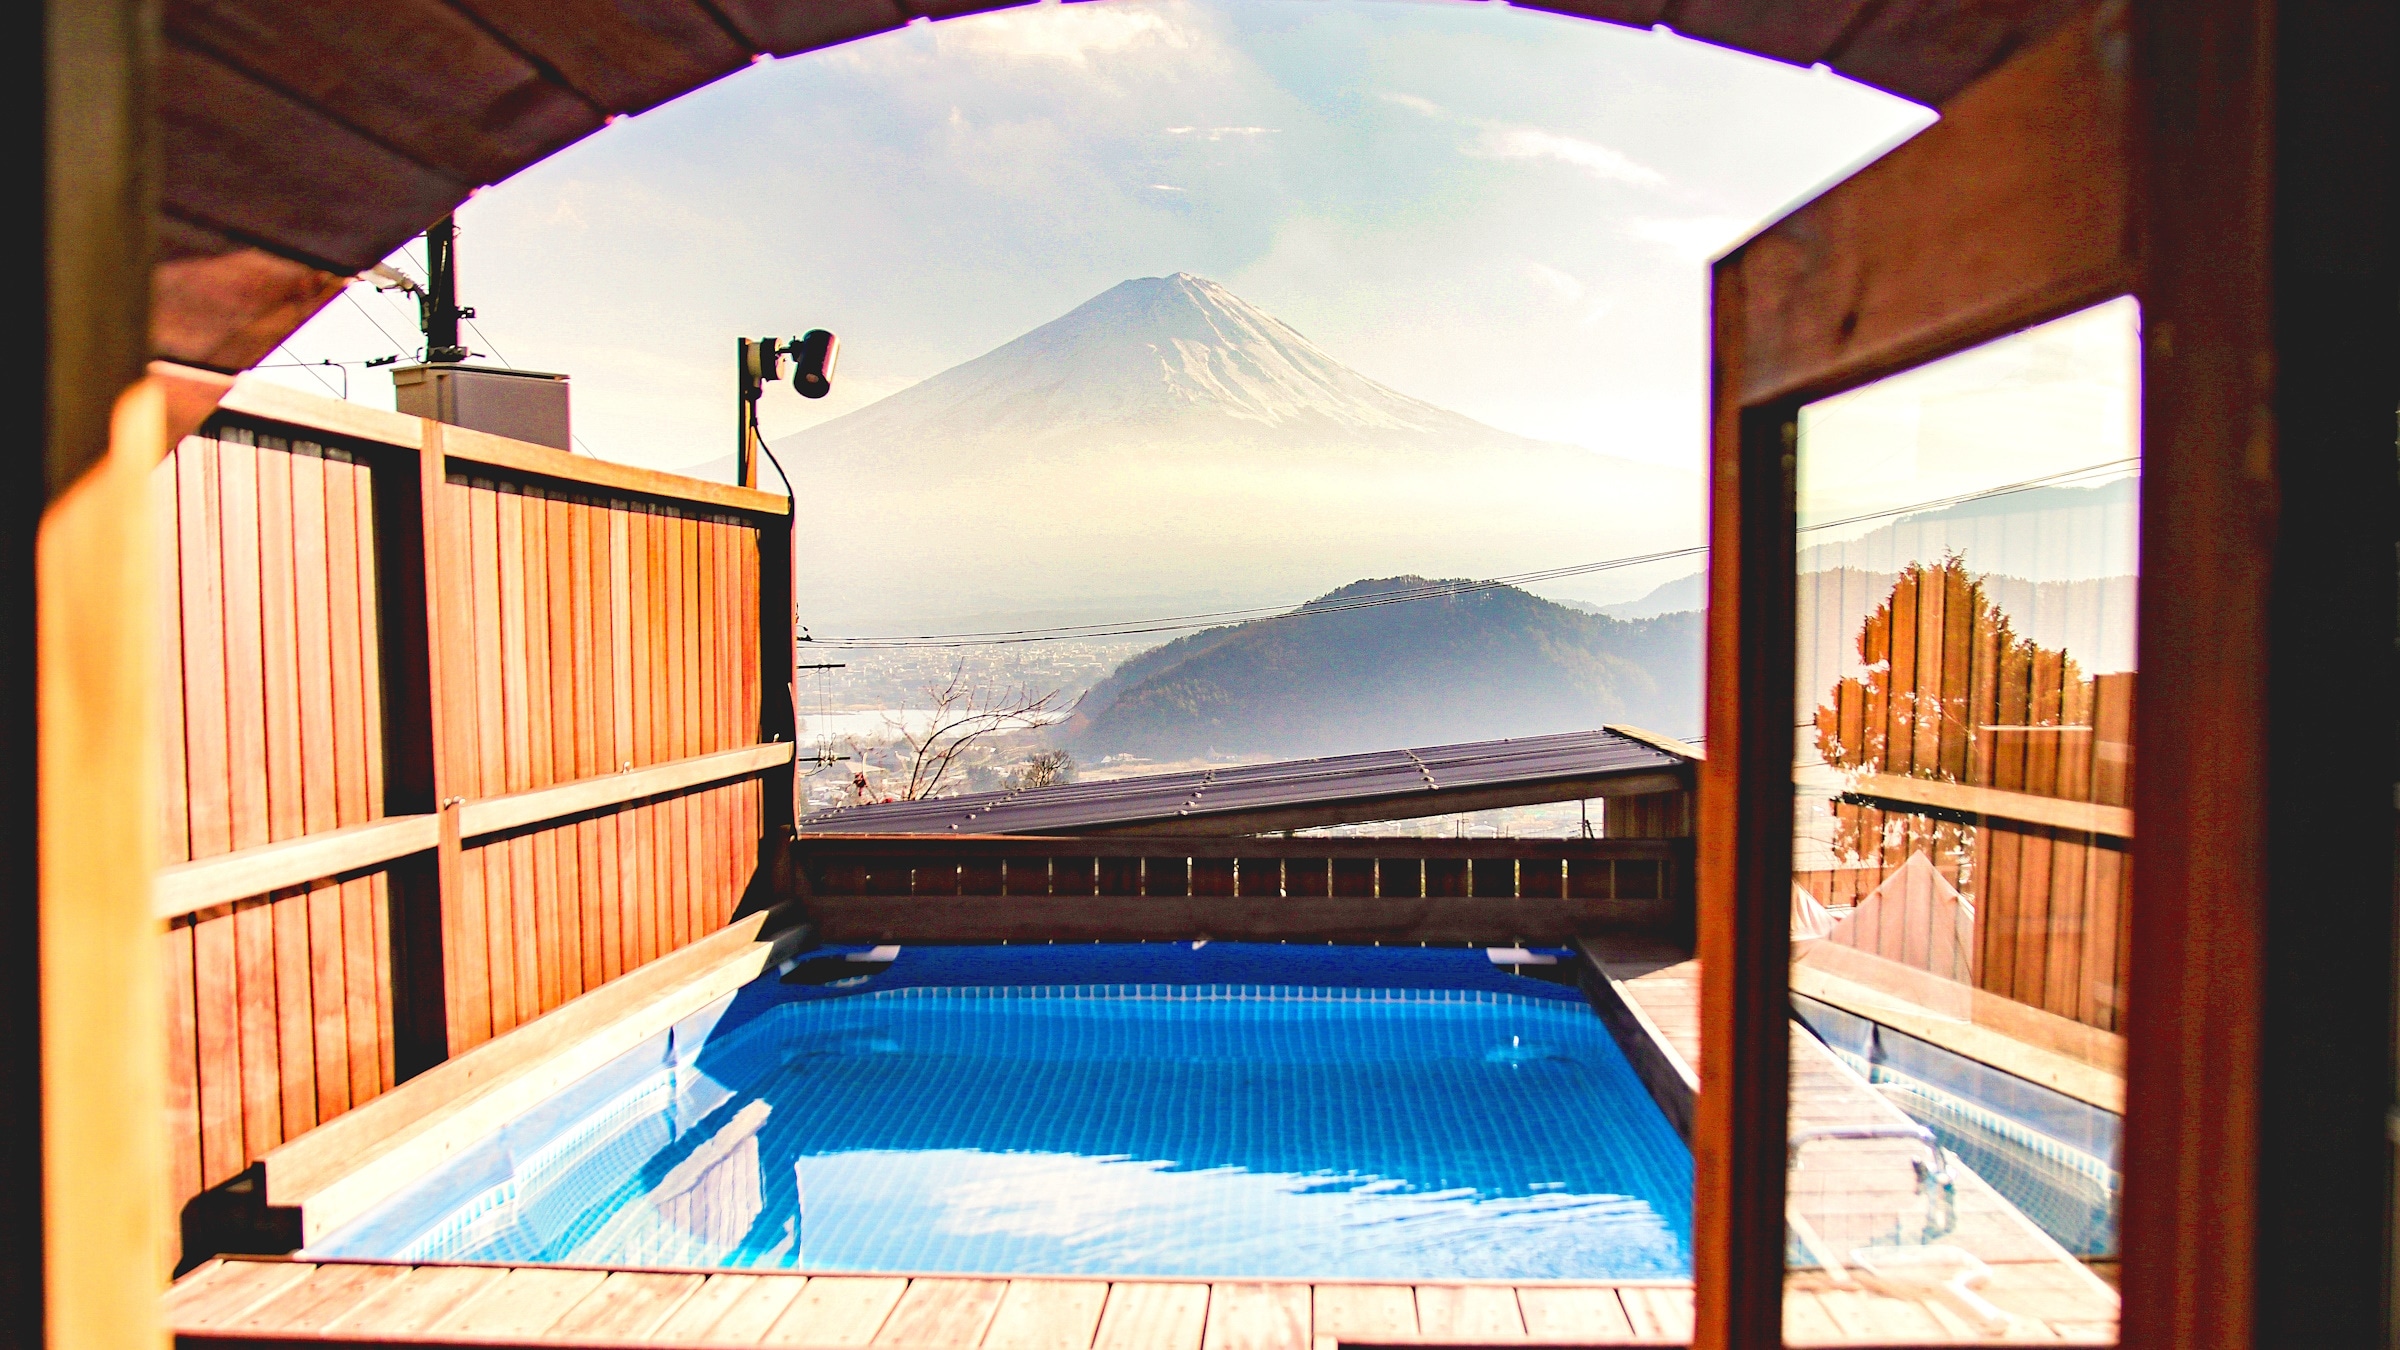 從桑拿房看到的富士山。